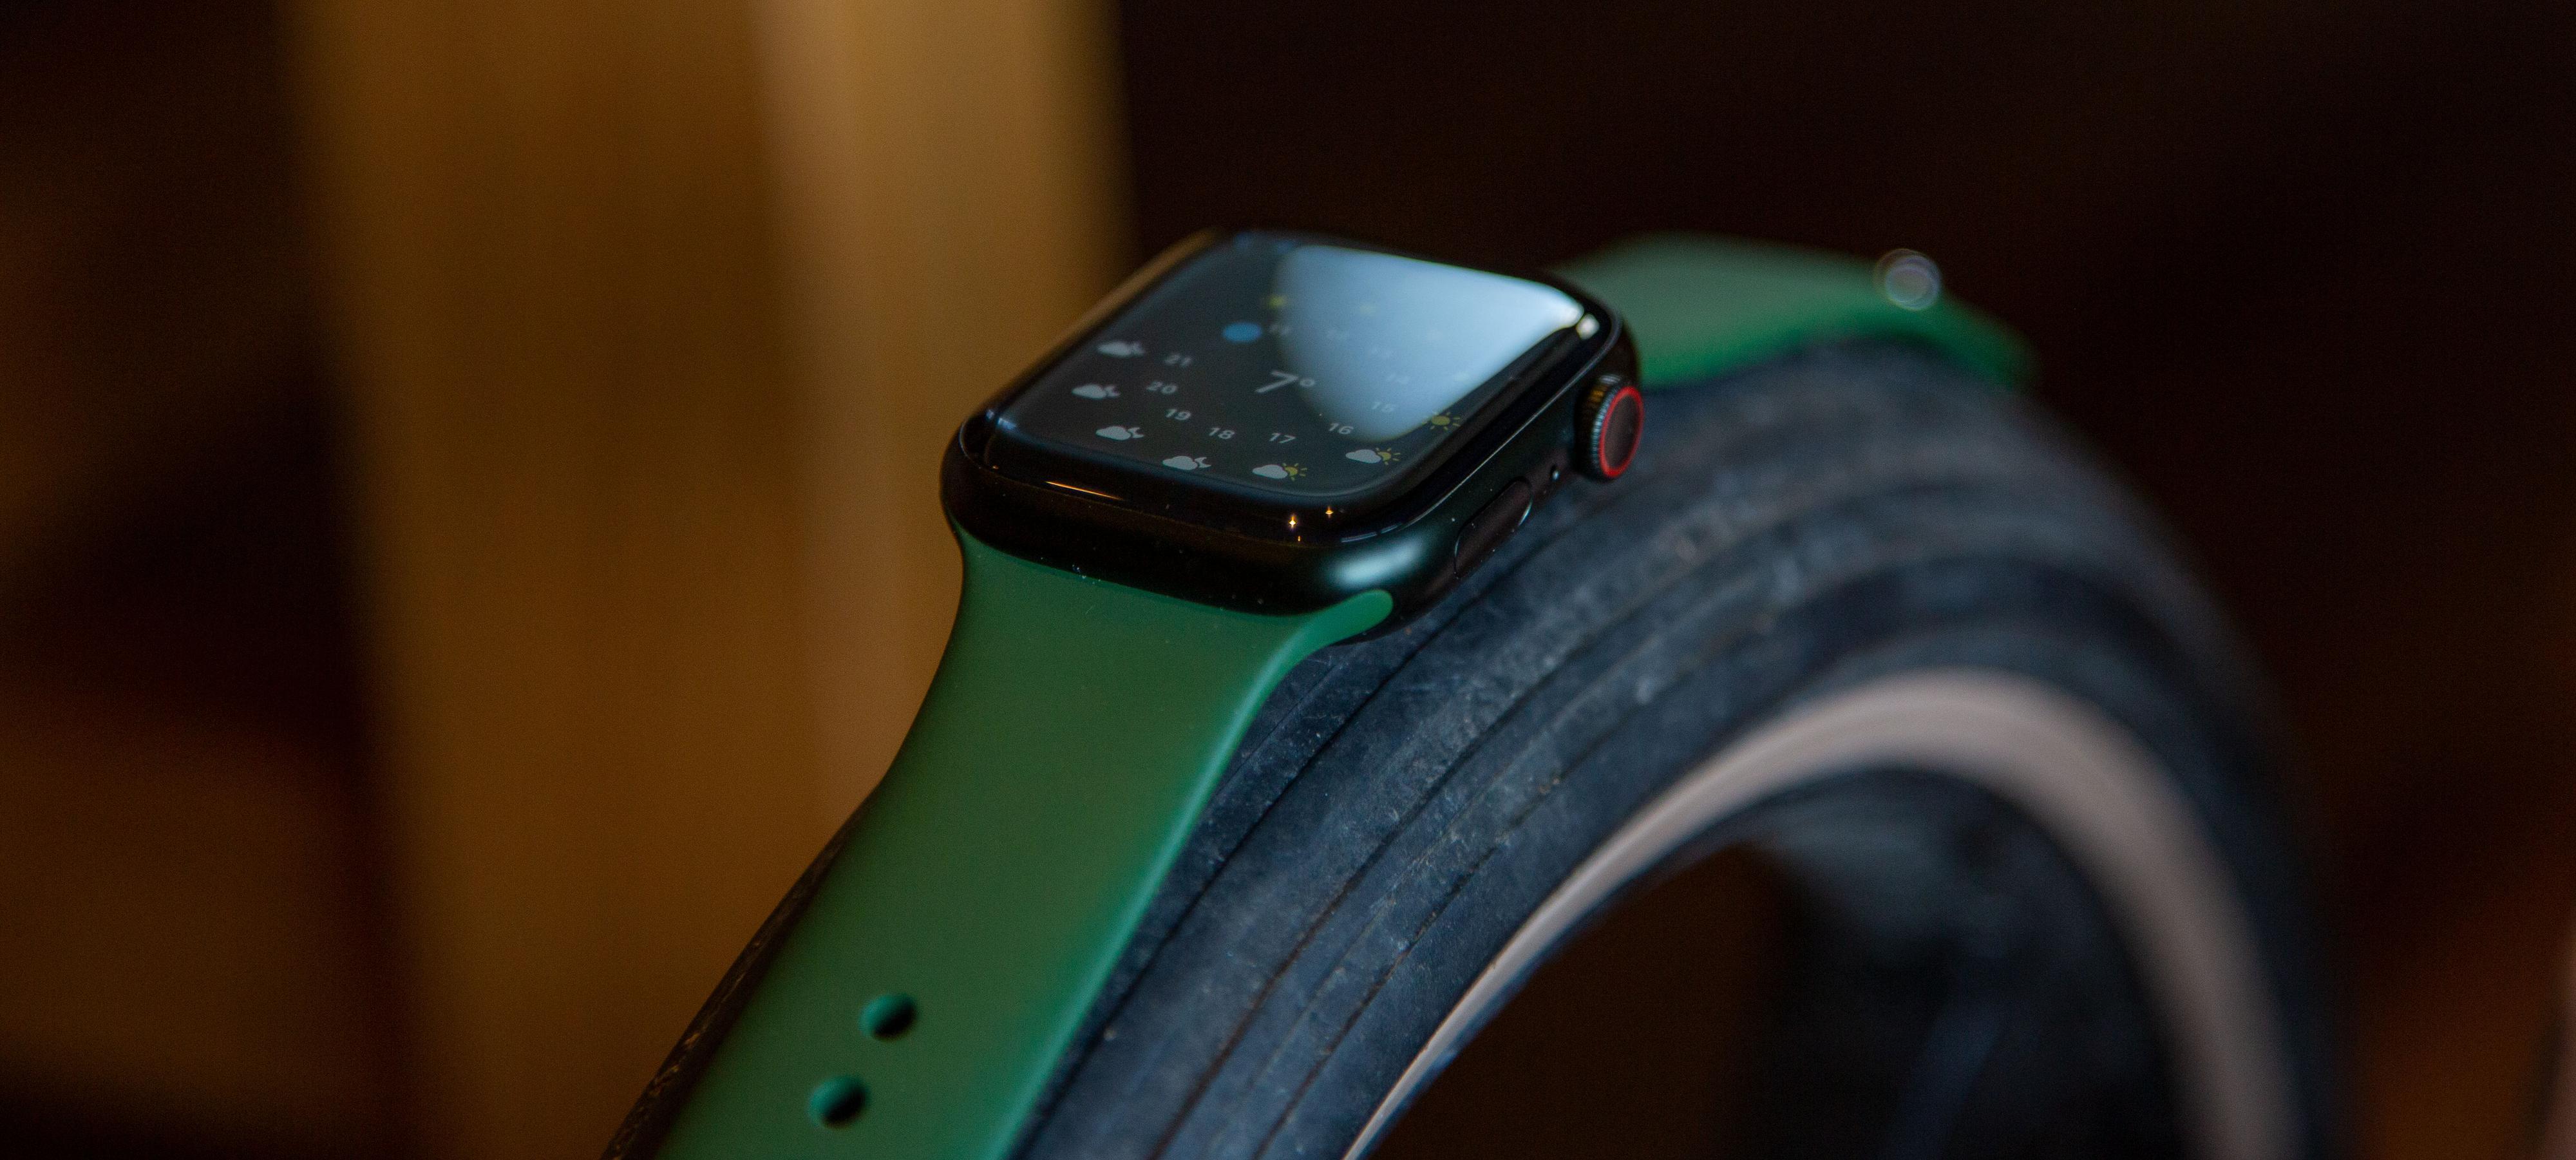 Apple Watch Series 7 er verdt å oppgradere til, men bare hvis du har en gammel klokke.